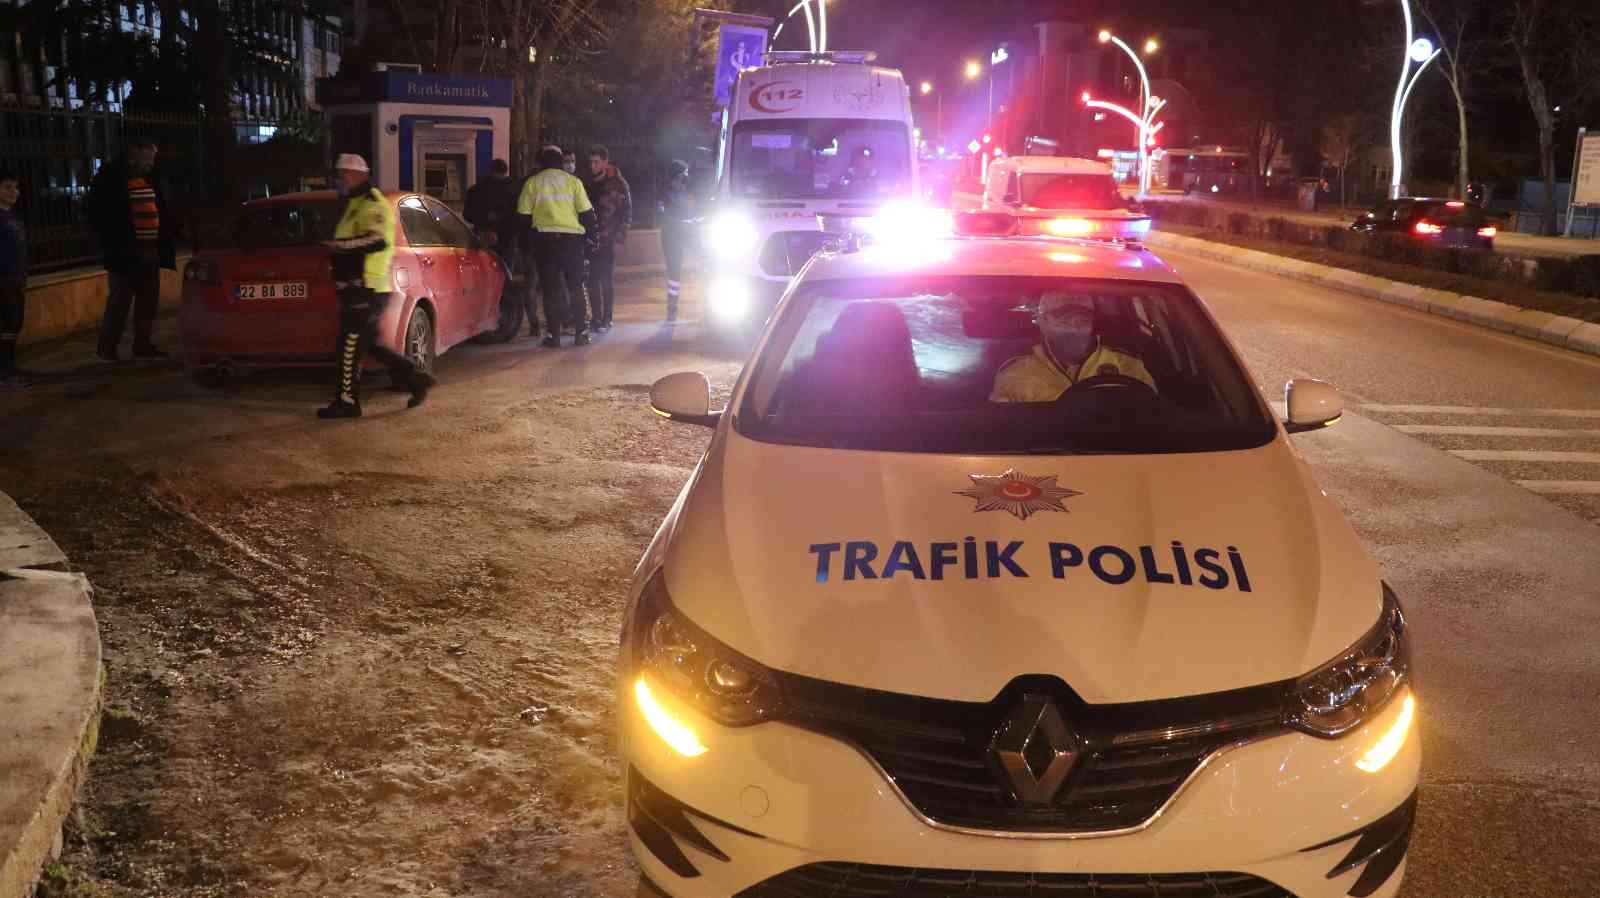 Edirne’de alkolü sürücü karşı şeride geçip kaza yaptı #edirne